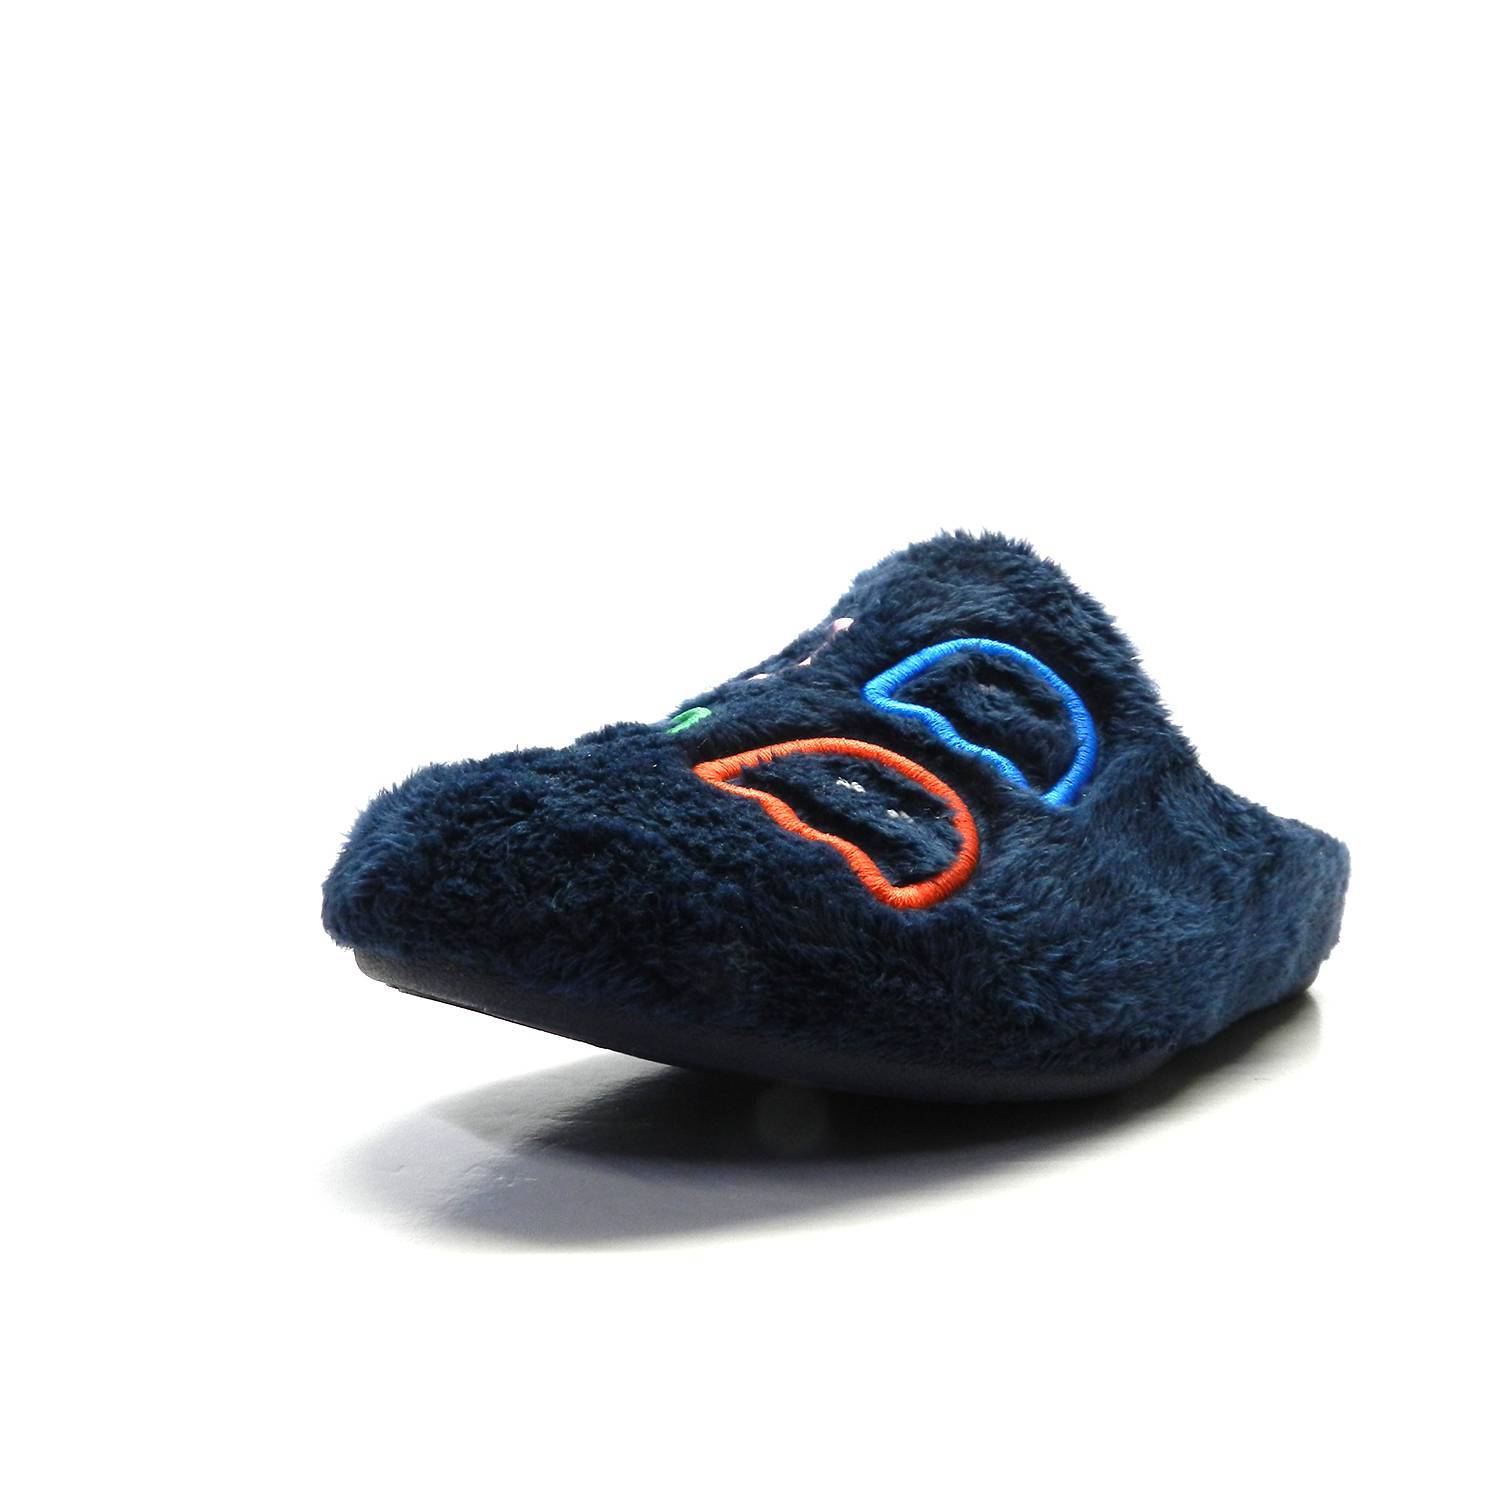 Zapatillas de casa de la marca Garzón, modelo N4748275 en color azul. Zapatillas infantil tipo zueco destalonado. Elaboradas en suave y cálido tejido sintetico de paño suapel estampado con dibujo Pacman. Cálido interior en micropolar en color rojo. Suela plana de goma flexible y antideslizante.